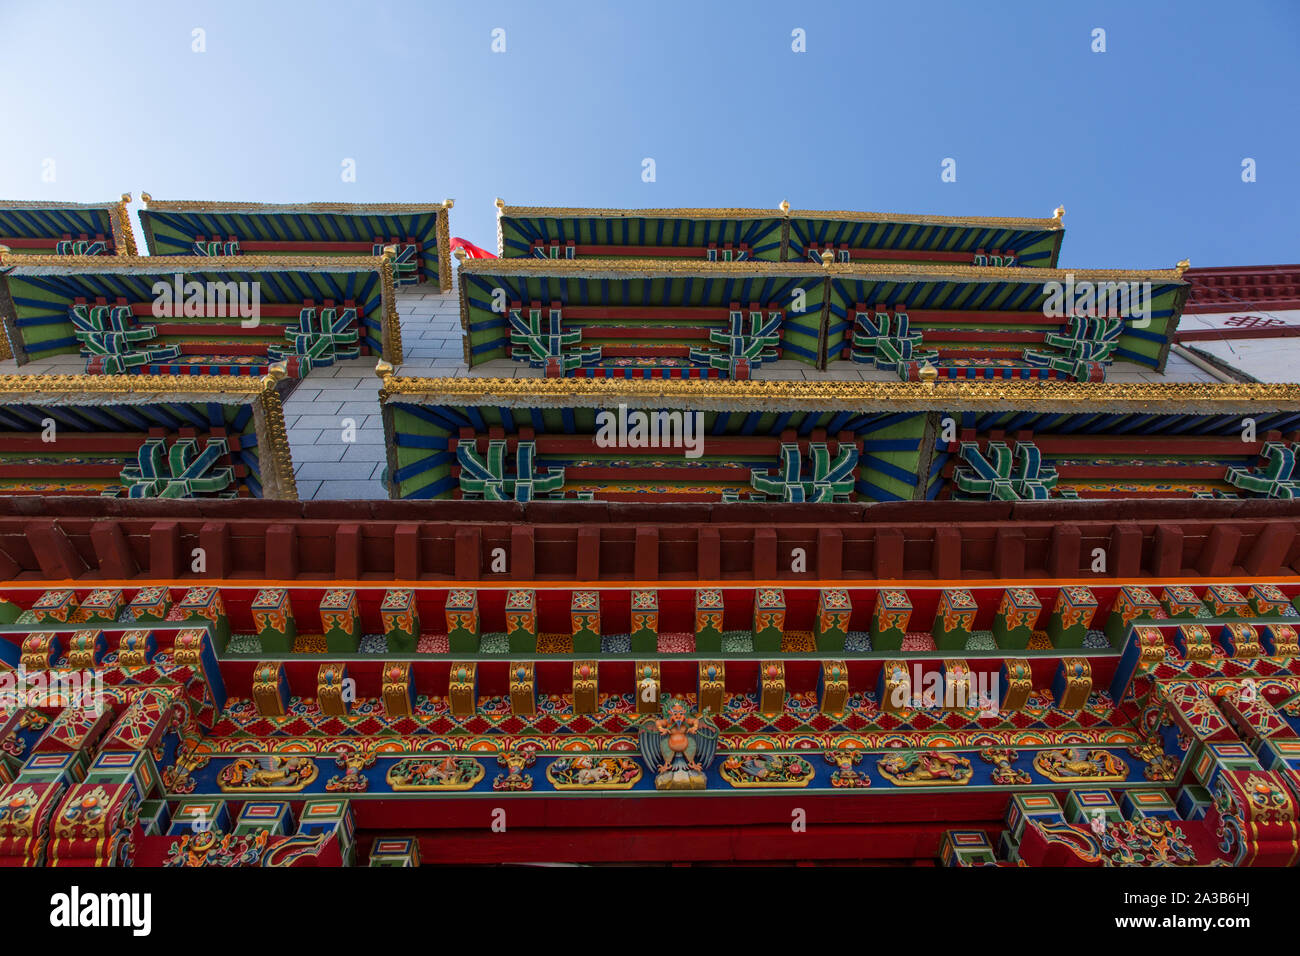 Le spalliere di gronda dipinte con un Garuda e altri simboli buddista su un edificio nella capitale asiatica città di Lhasa, in Tibet. Foto Stock